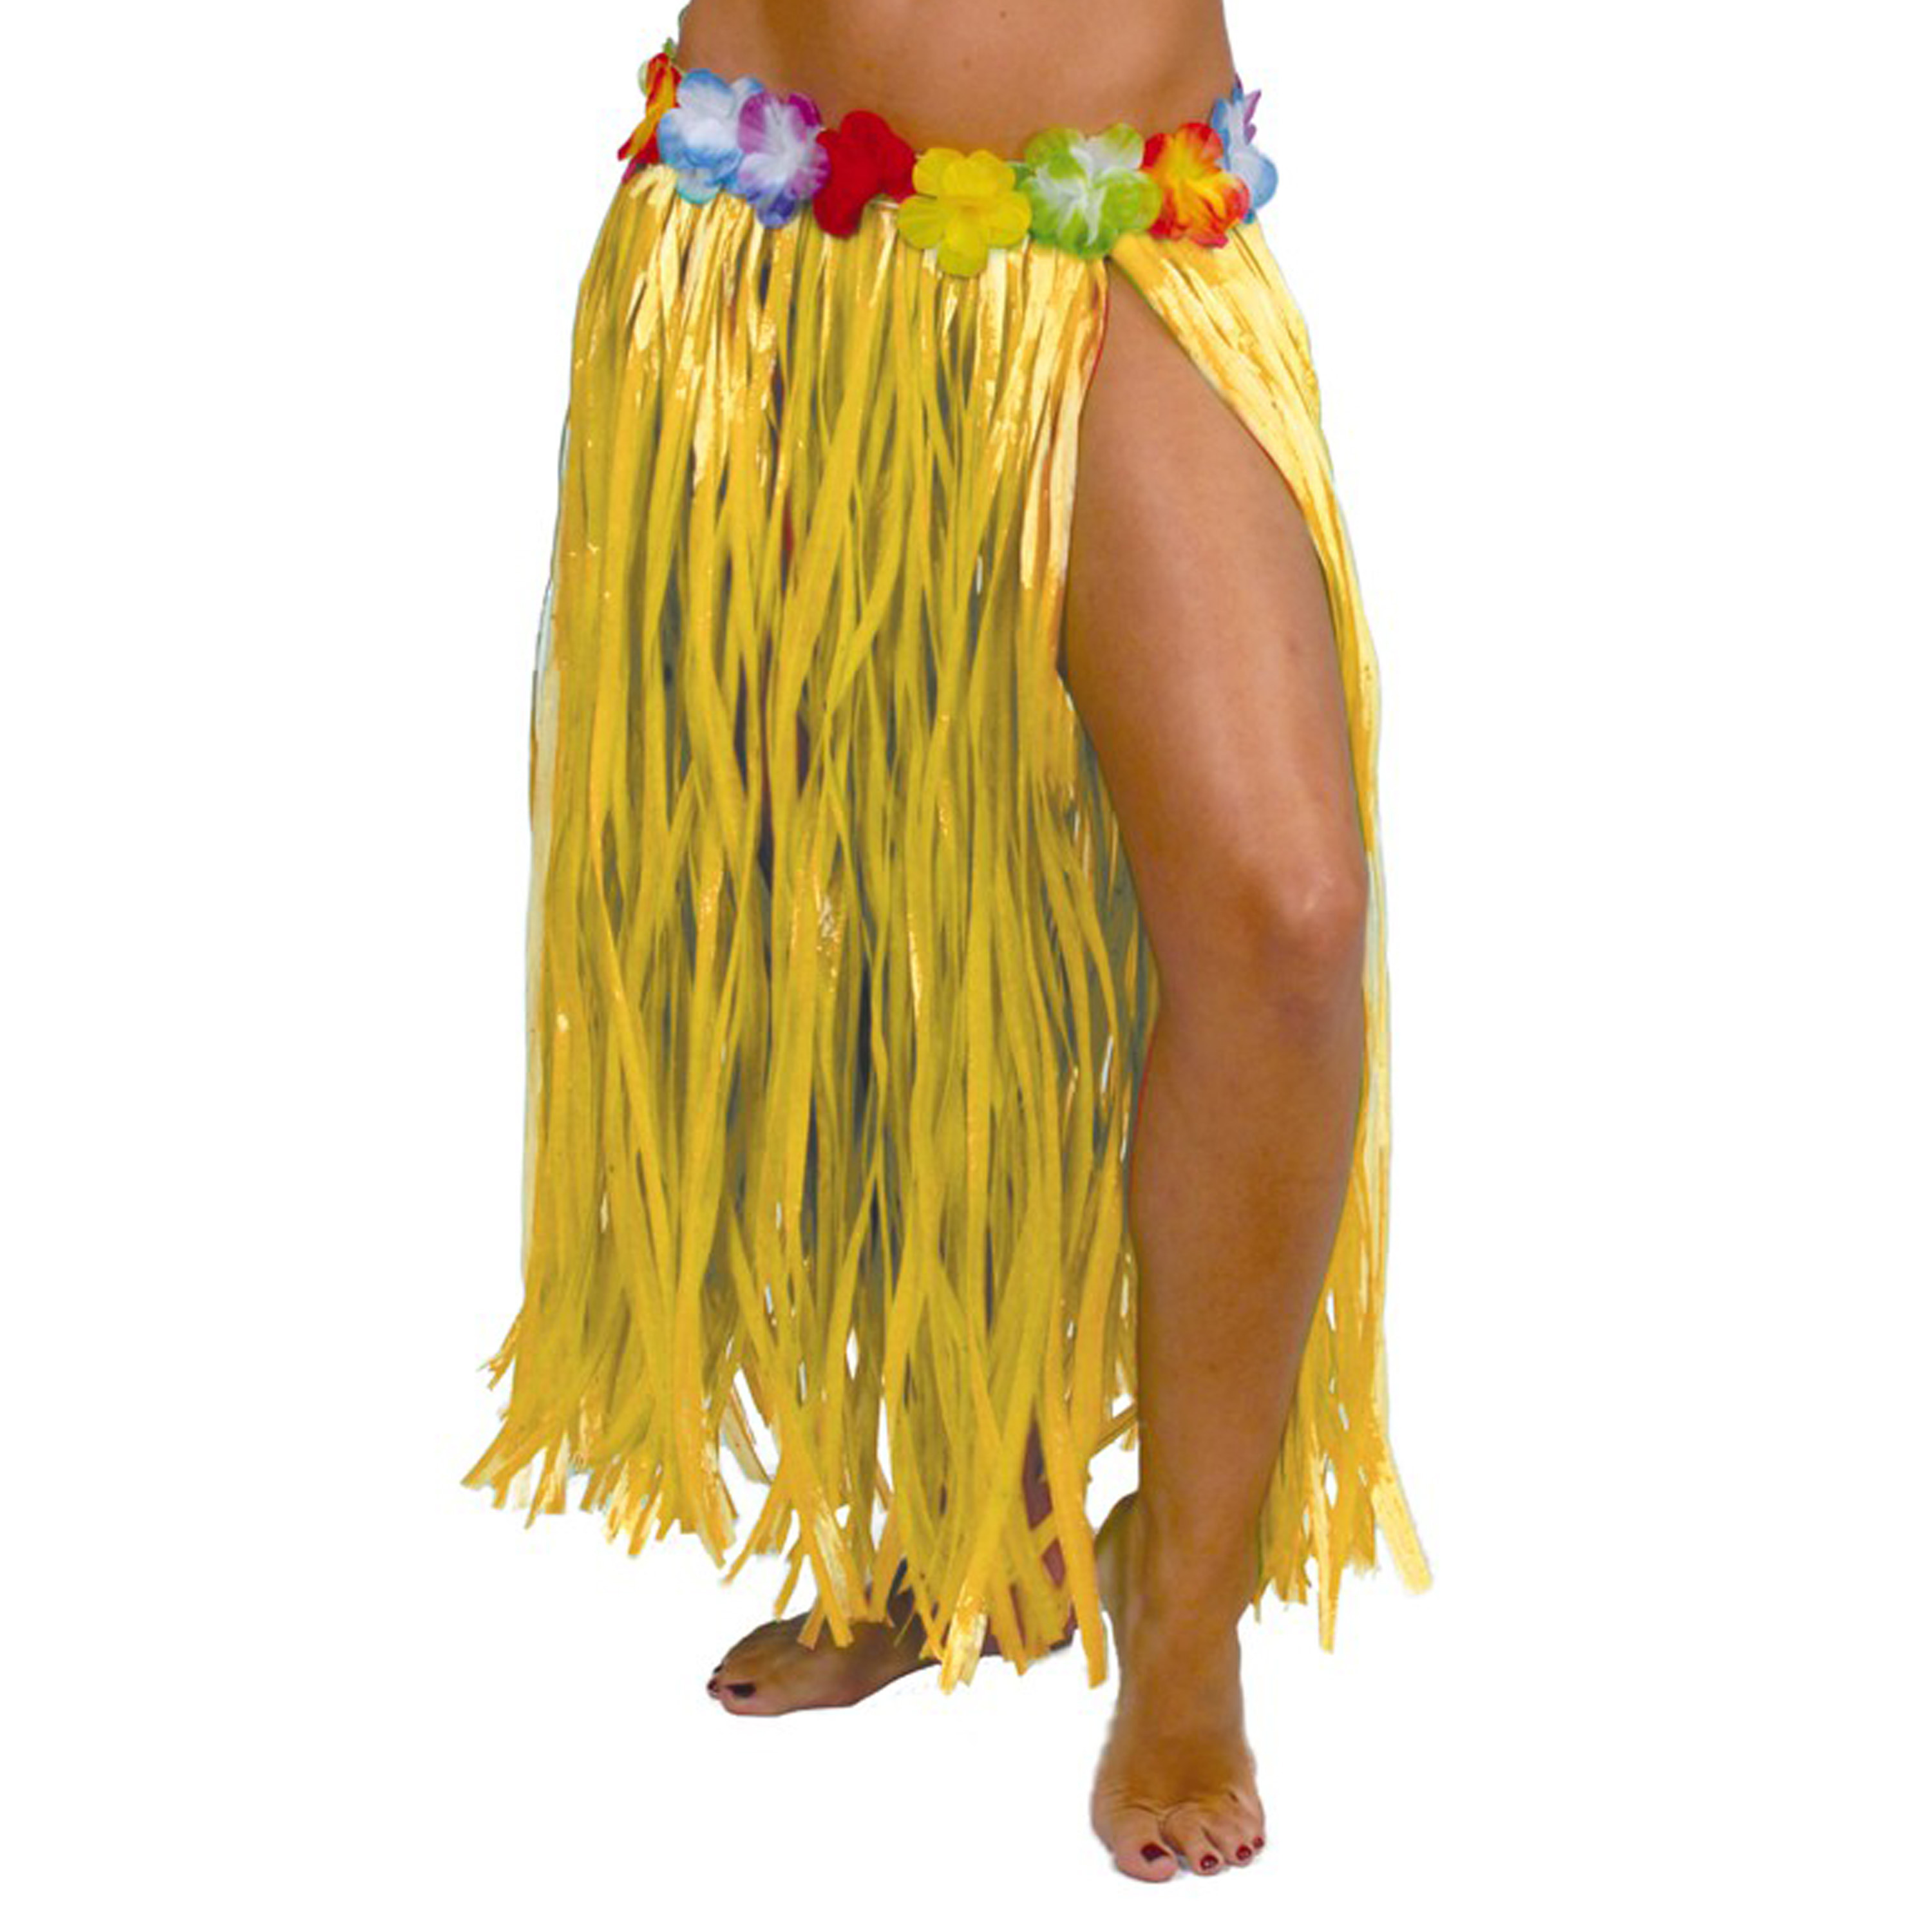 Toppers Hawaii verkleed rokje voor volwassenen geel 75 cm rieten hoela rokje tropisch